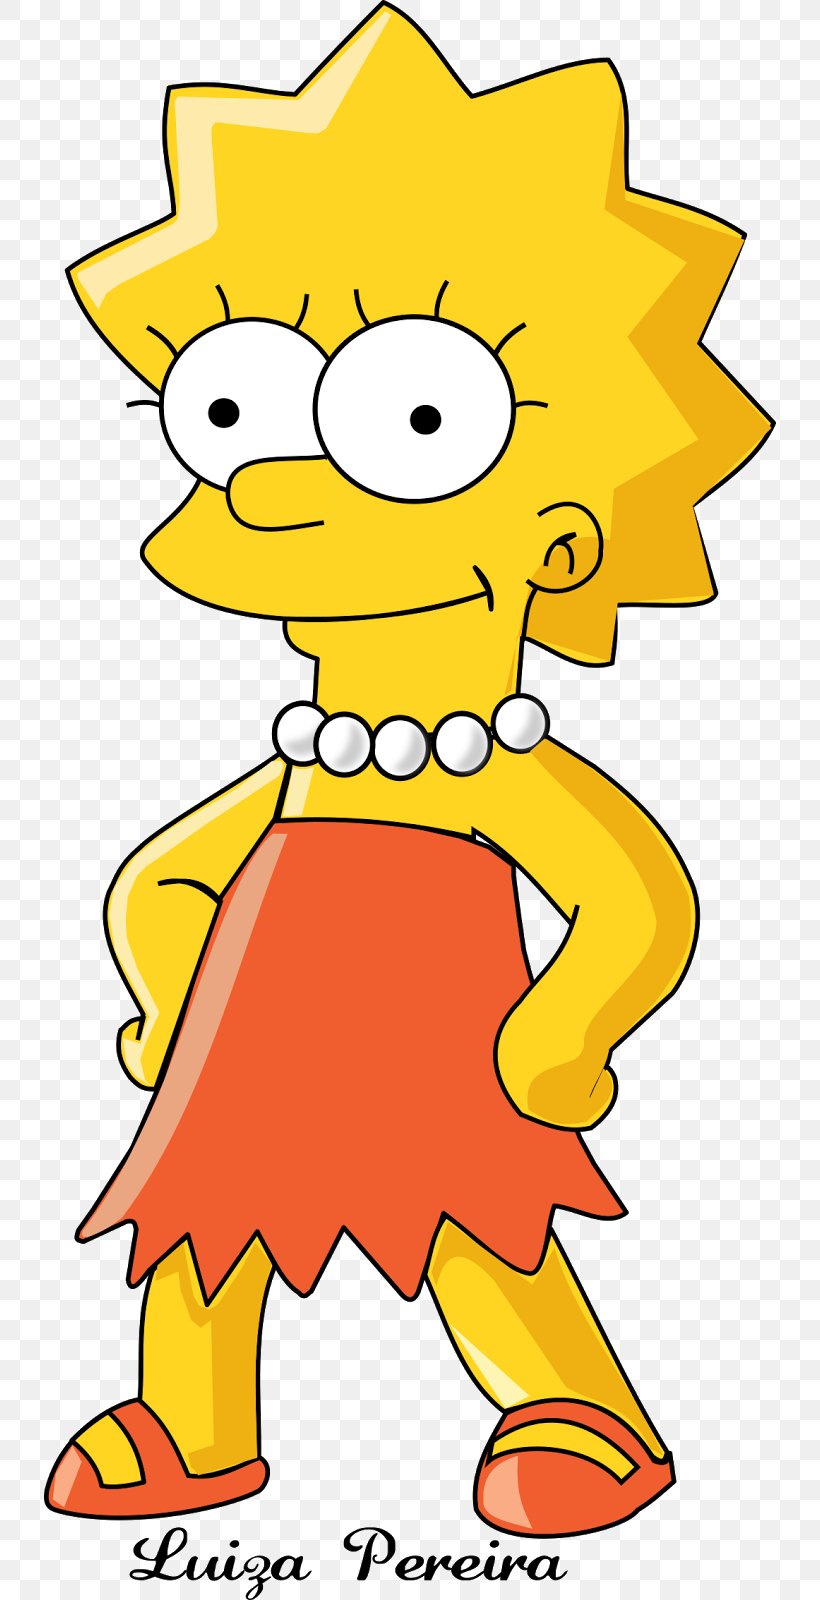 Lisa Simpson Bart Simpson Marge Simpson Maggie Simpson The Simpsons: Tapped Out, PNG, 732x1600px, Lisa Simpson, Animated Series, Area, Art, Artwork Download Free